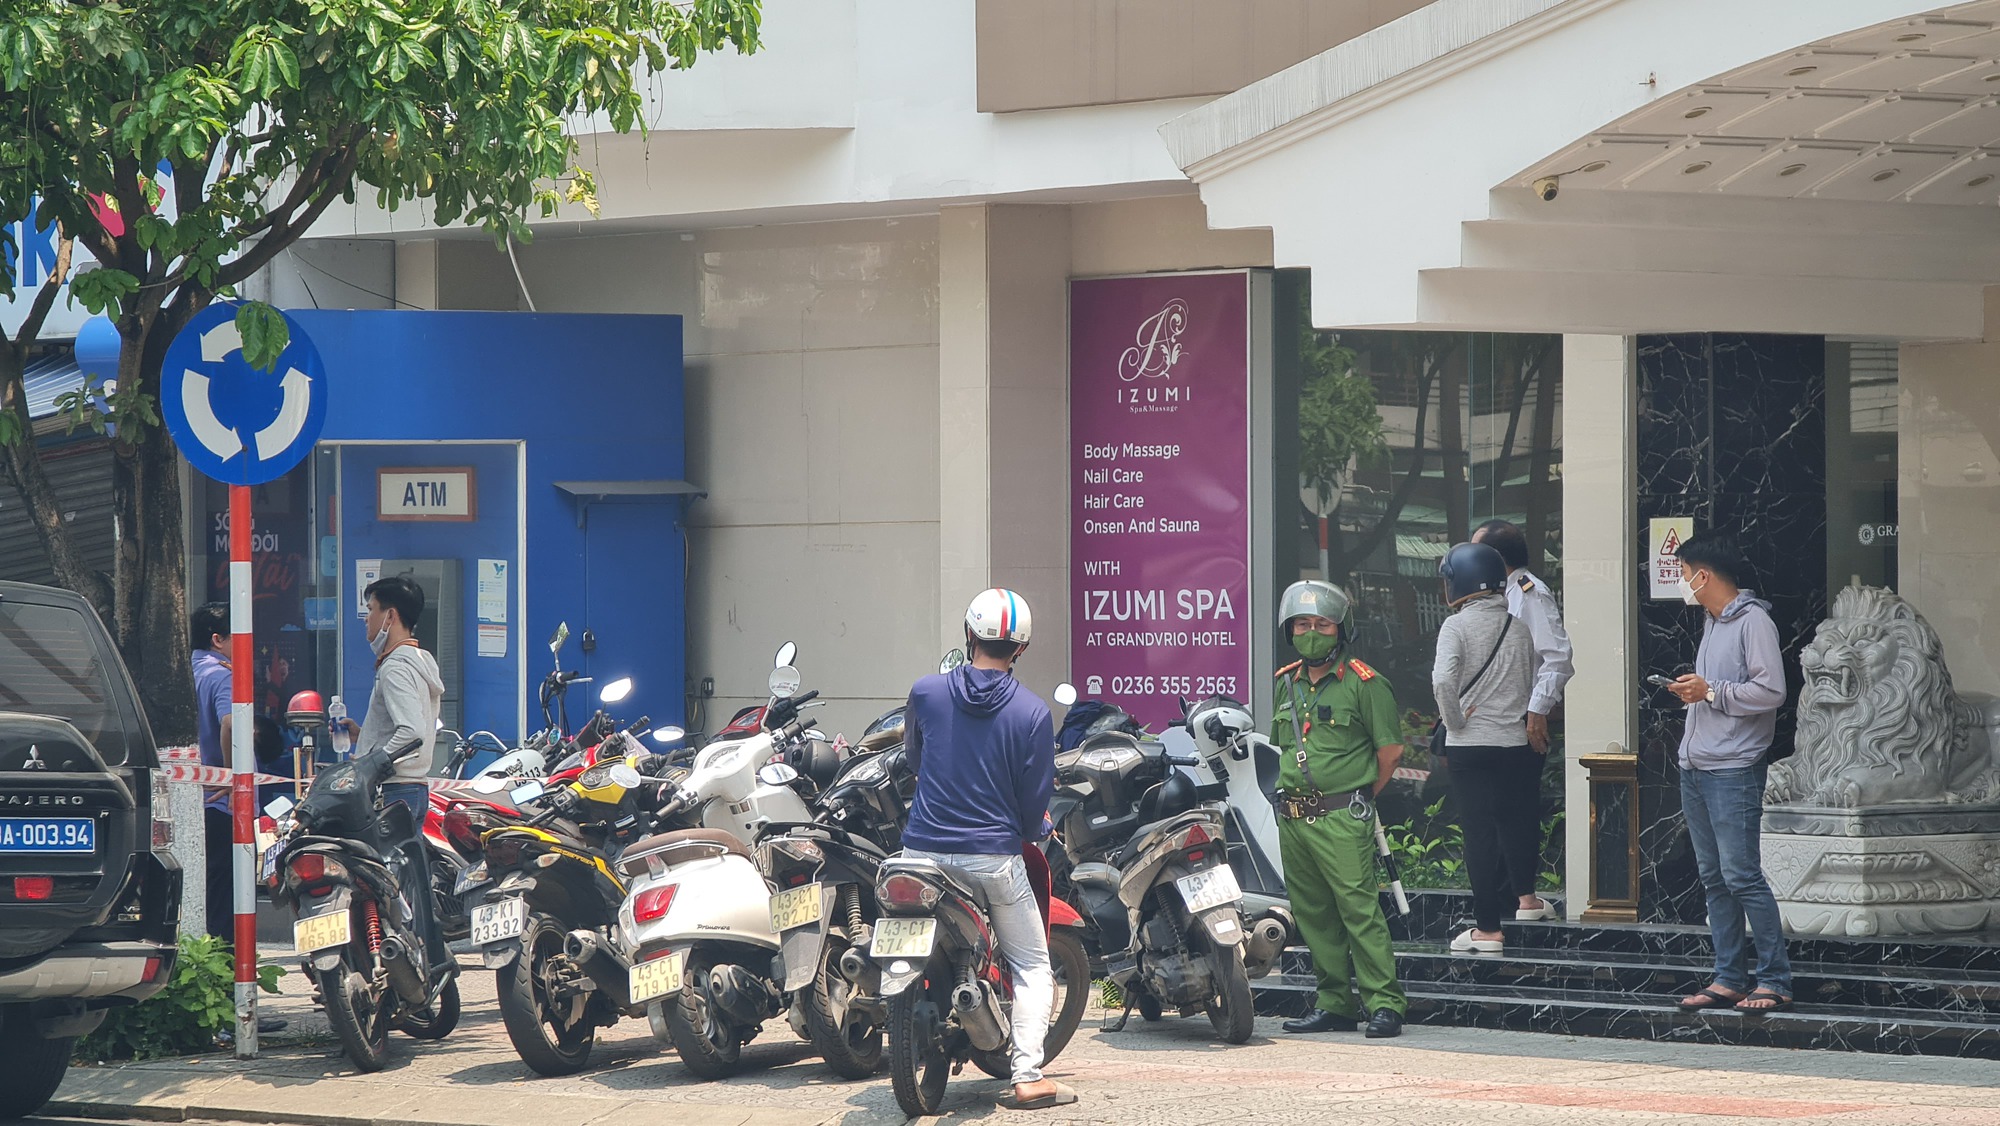 CLIP: Cướp ngân hàng ở Đà Nẵng, công an đang khám nghiệm hiện trường - Ảnh 2.